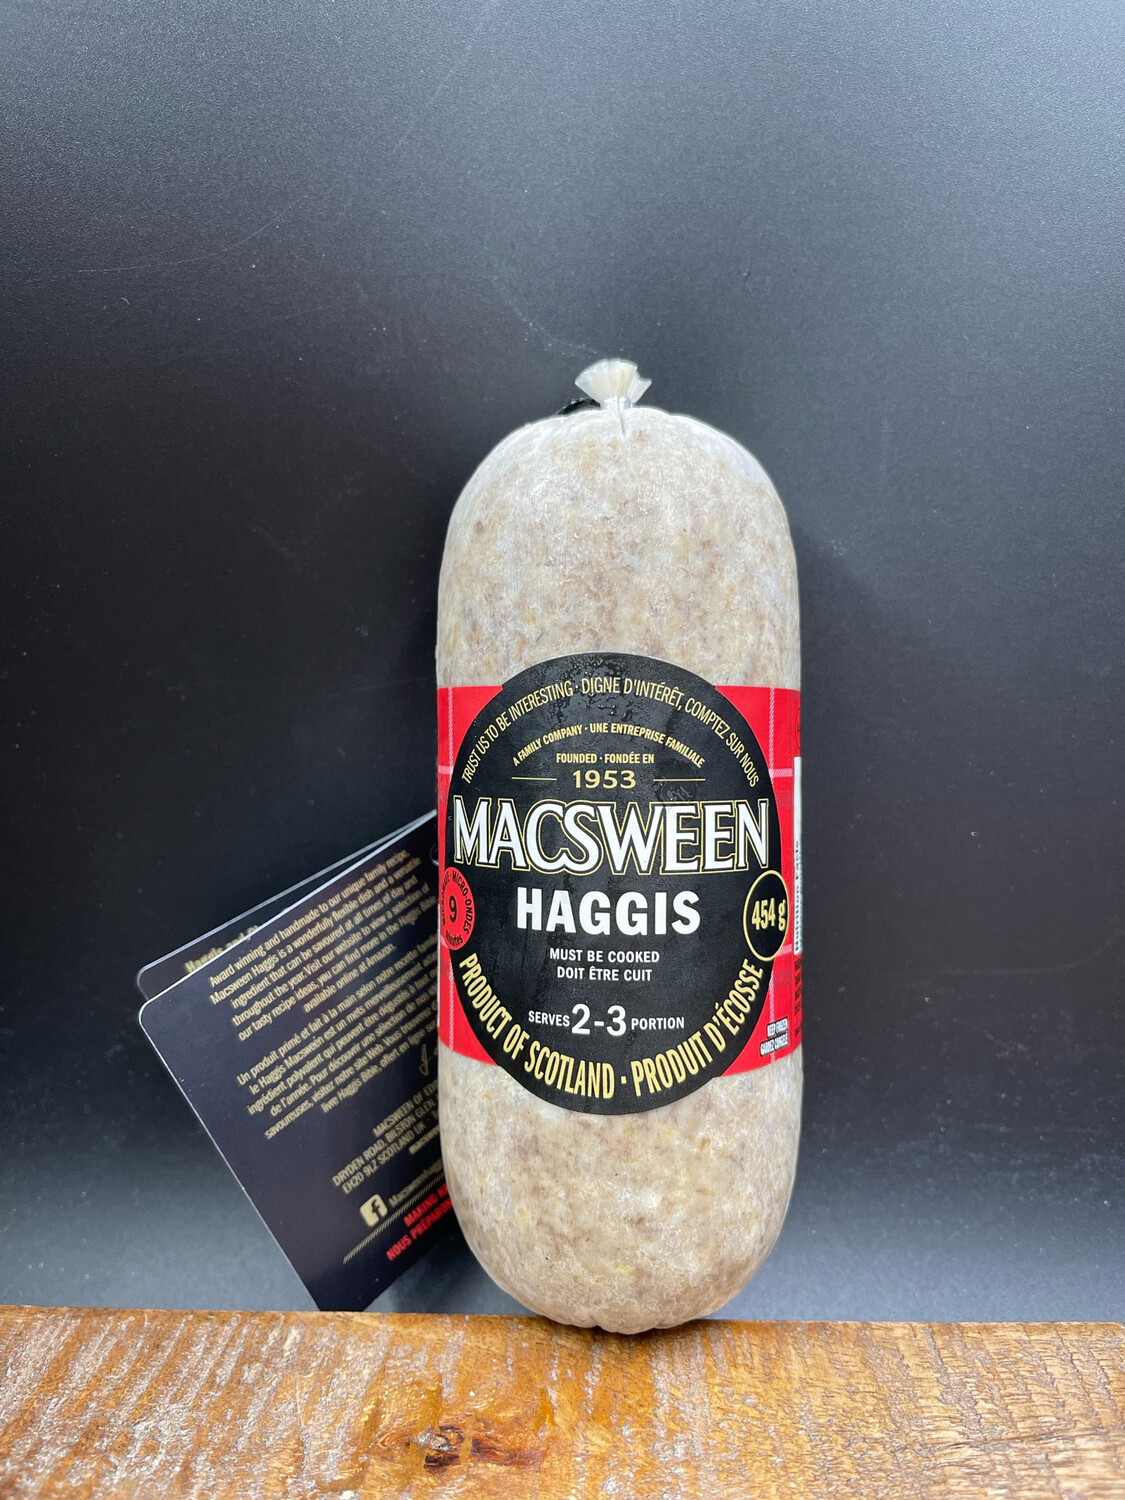 Macsween's Haggis 454g